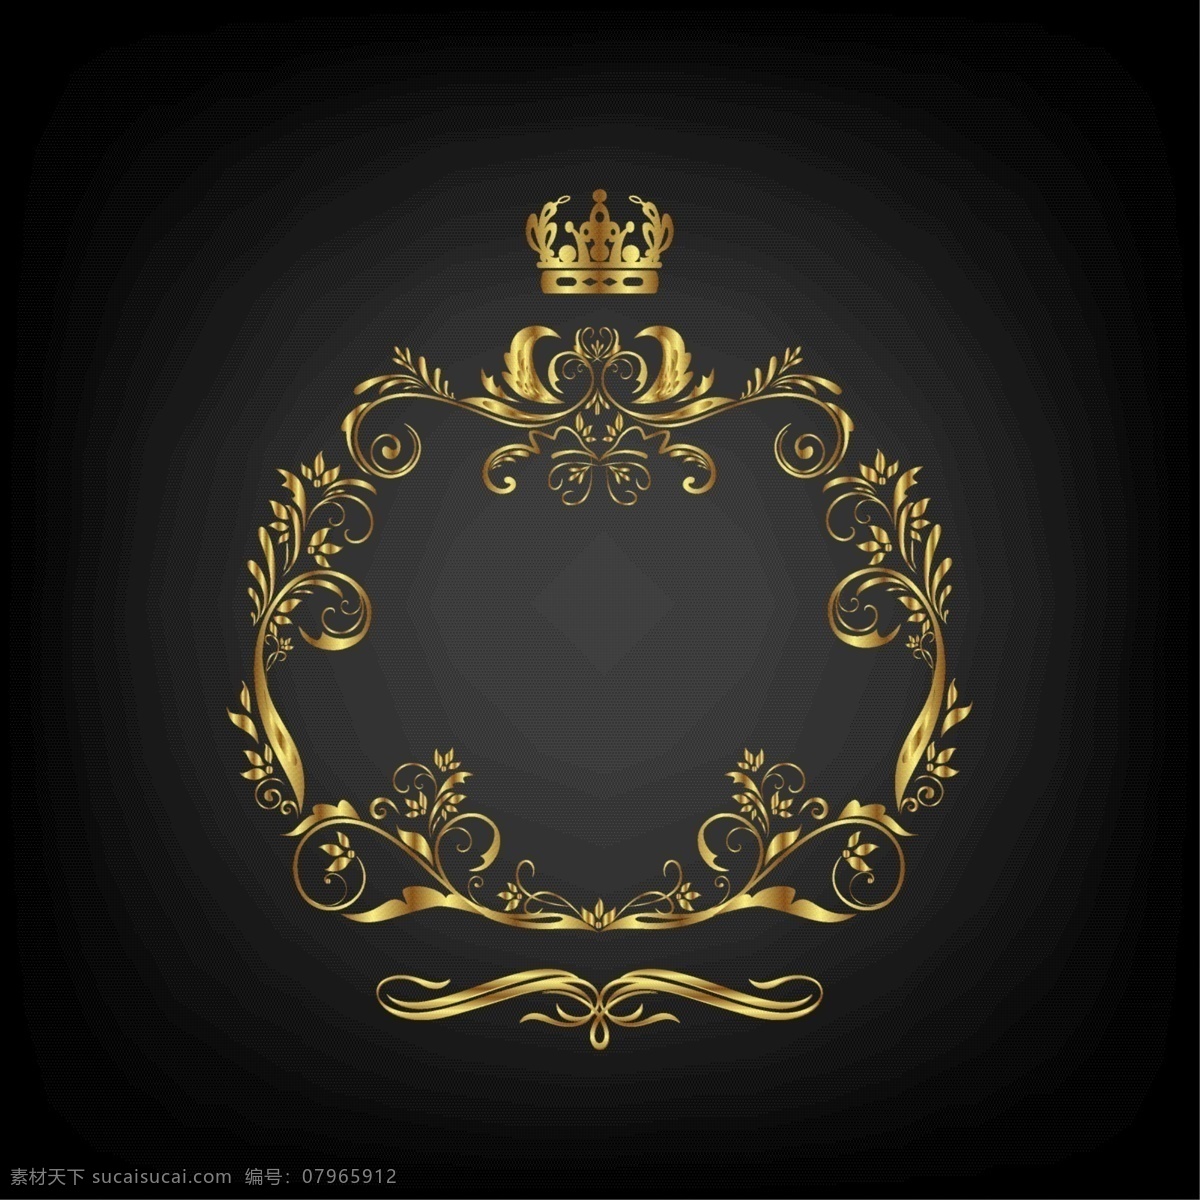 皇冠 王冠 king 皇族 贵族 王室 国王 小图标 小标志 图标 logo 标志 vi icon 标识 图标设计 logo设计 标志设计 标识设计 矢量设计 矢量图标 欧美图标 欧美设计 其他图标 标志图标